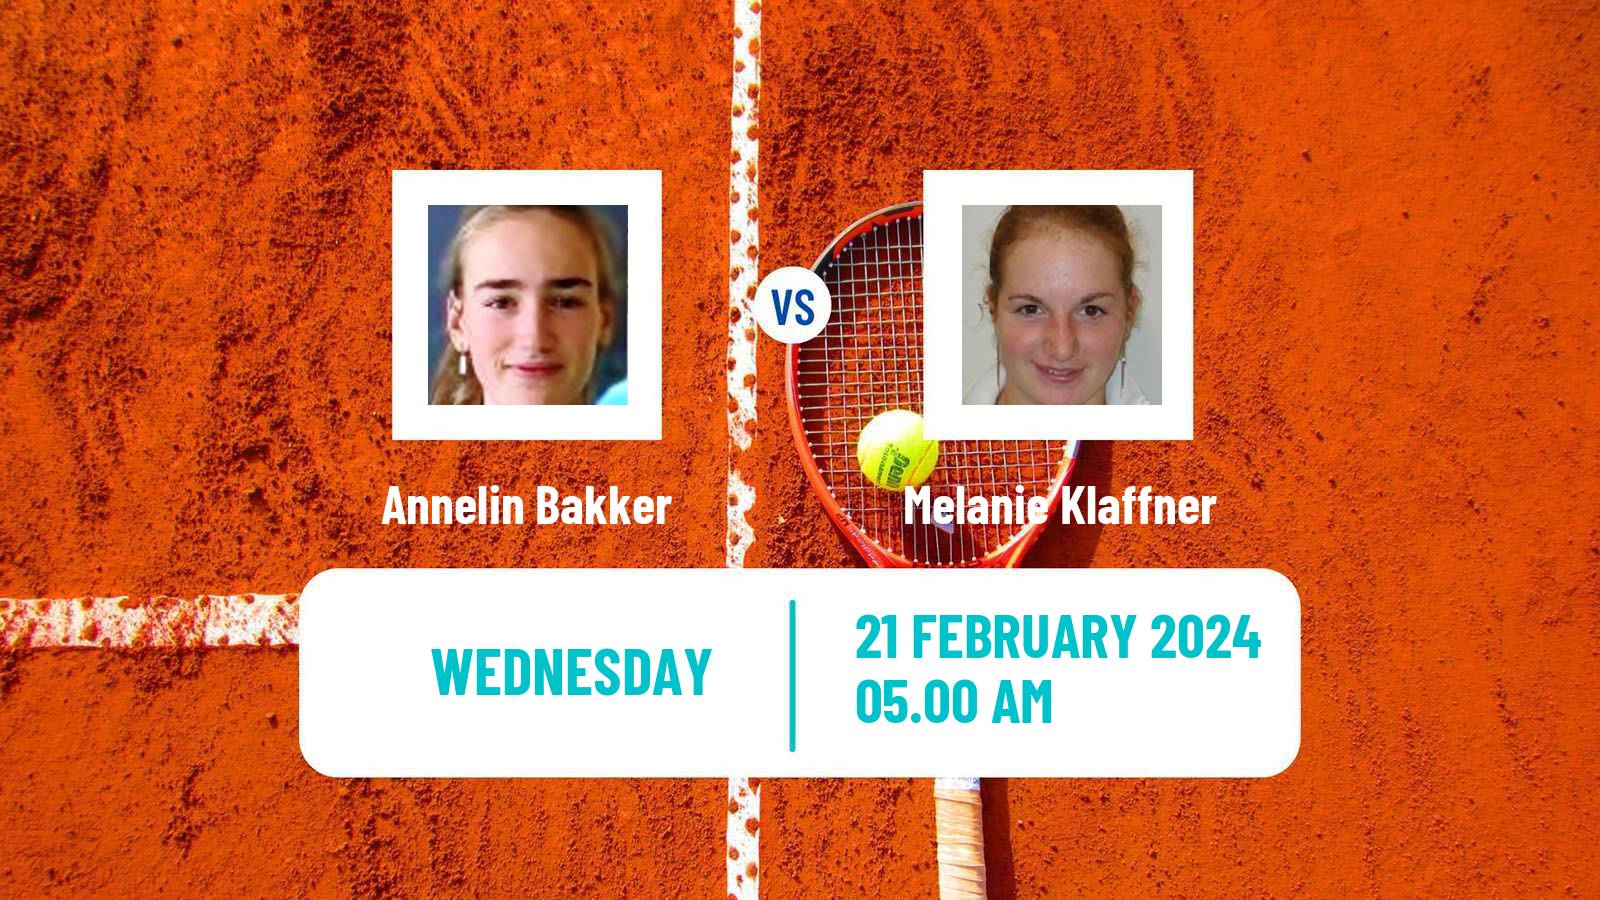 Tennis ITF W15 Sharm Elsheikh 22 Women Annelin Bakker - Melanie Klaffner